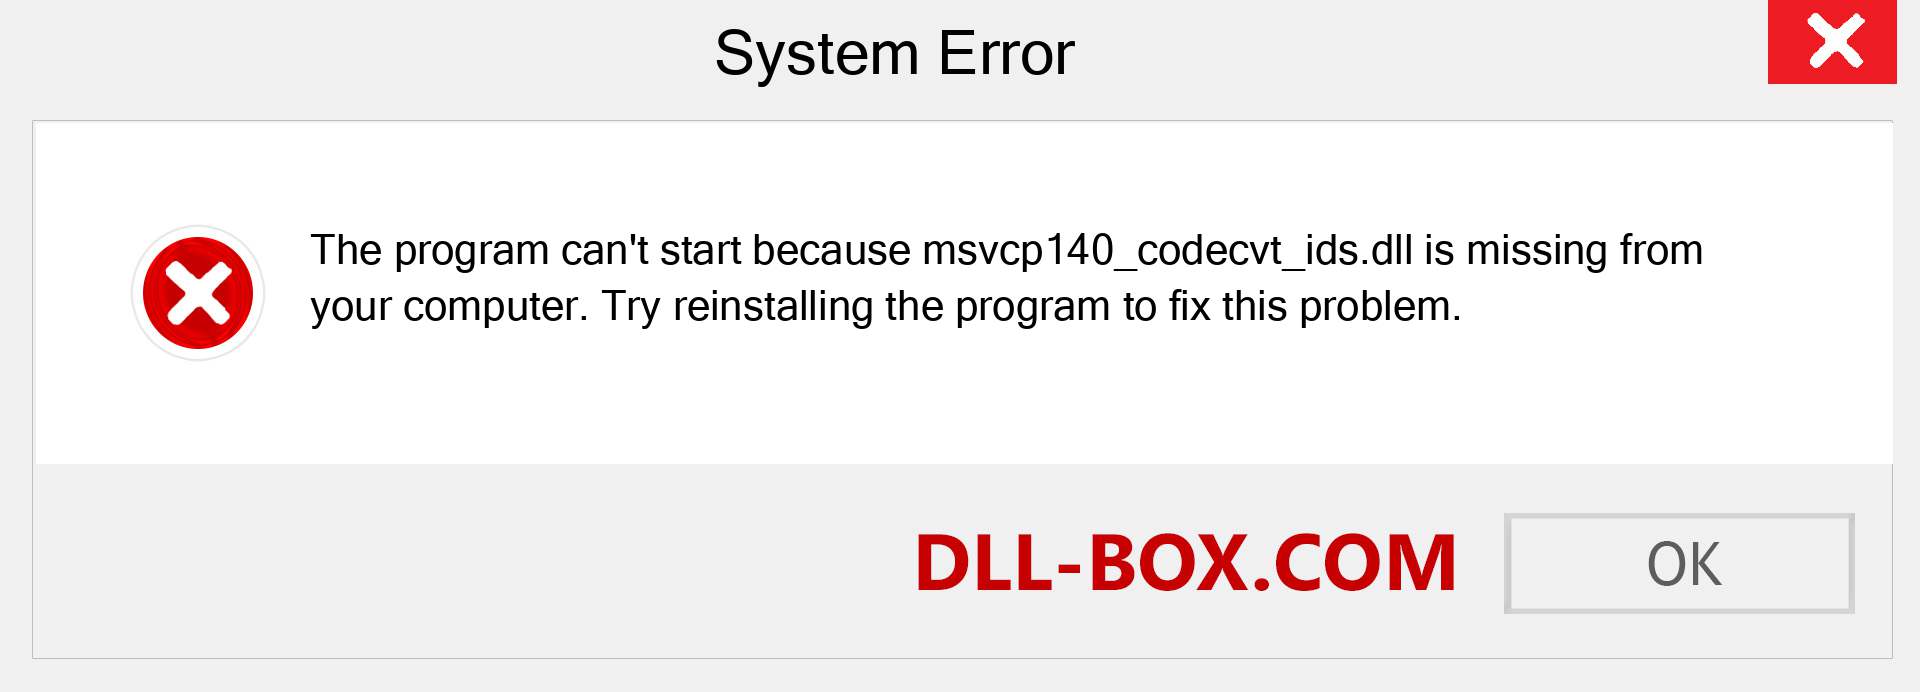 не удалось продолжить выполнение кода поскольку система не обнаружила msvcp140 dll гта 5 фото 65